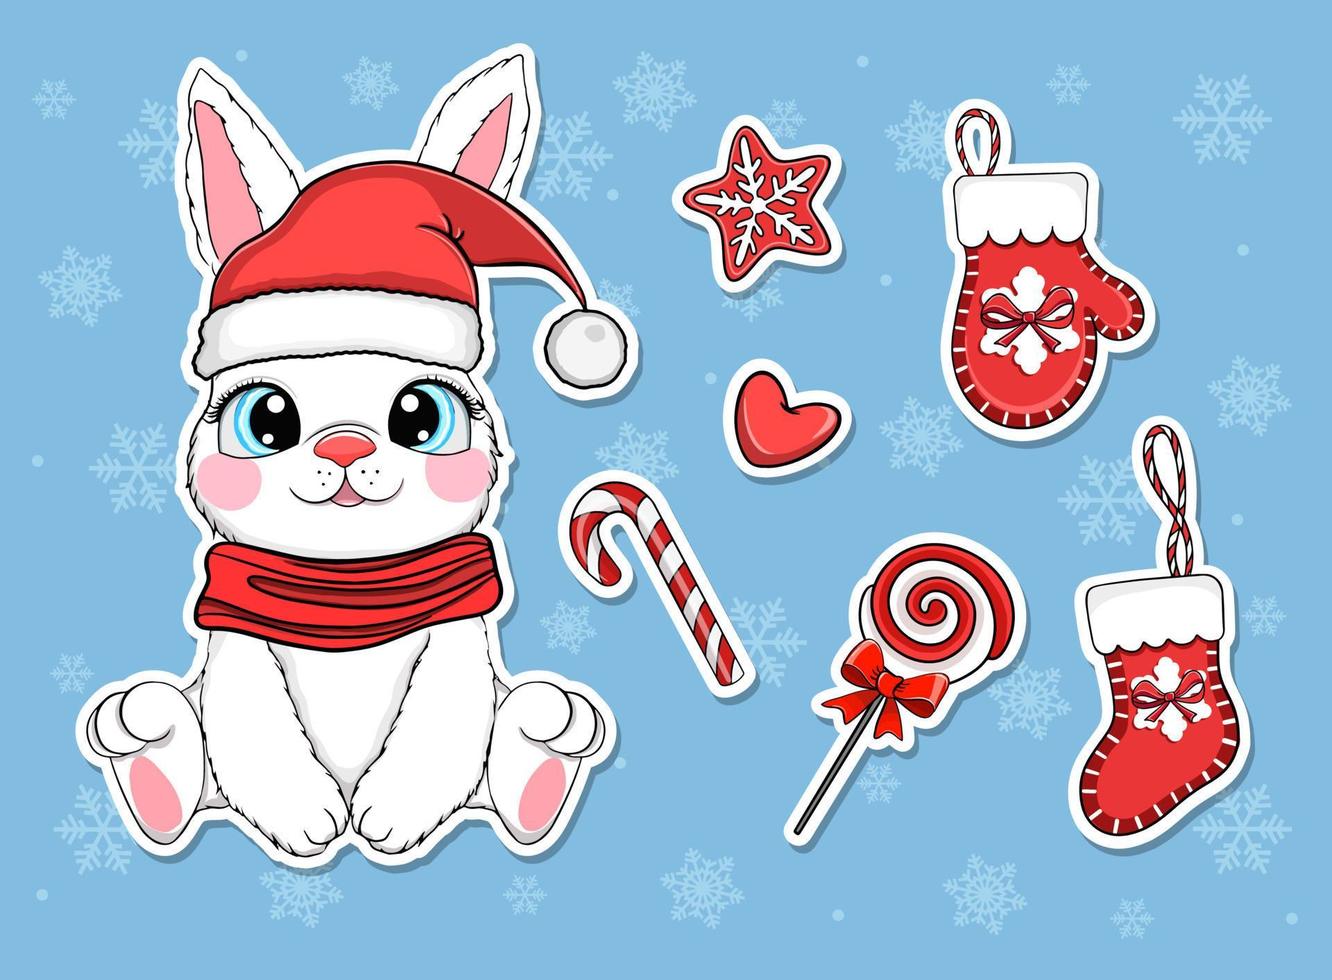 Natale adesivi con coniglio Santa claus, carino cartone animato vettore